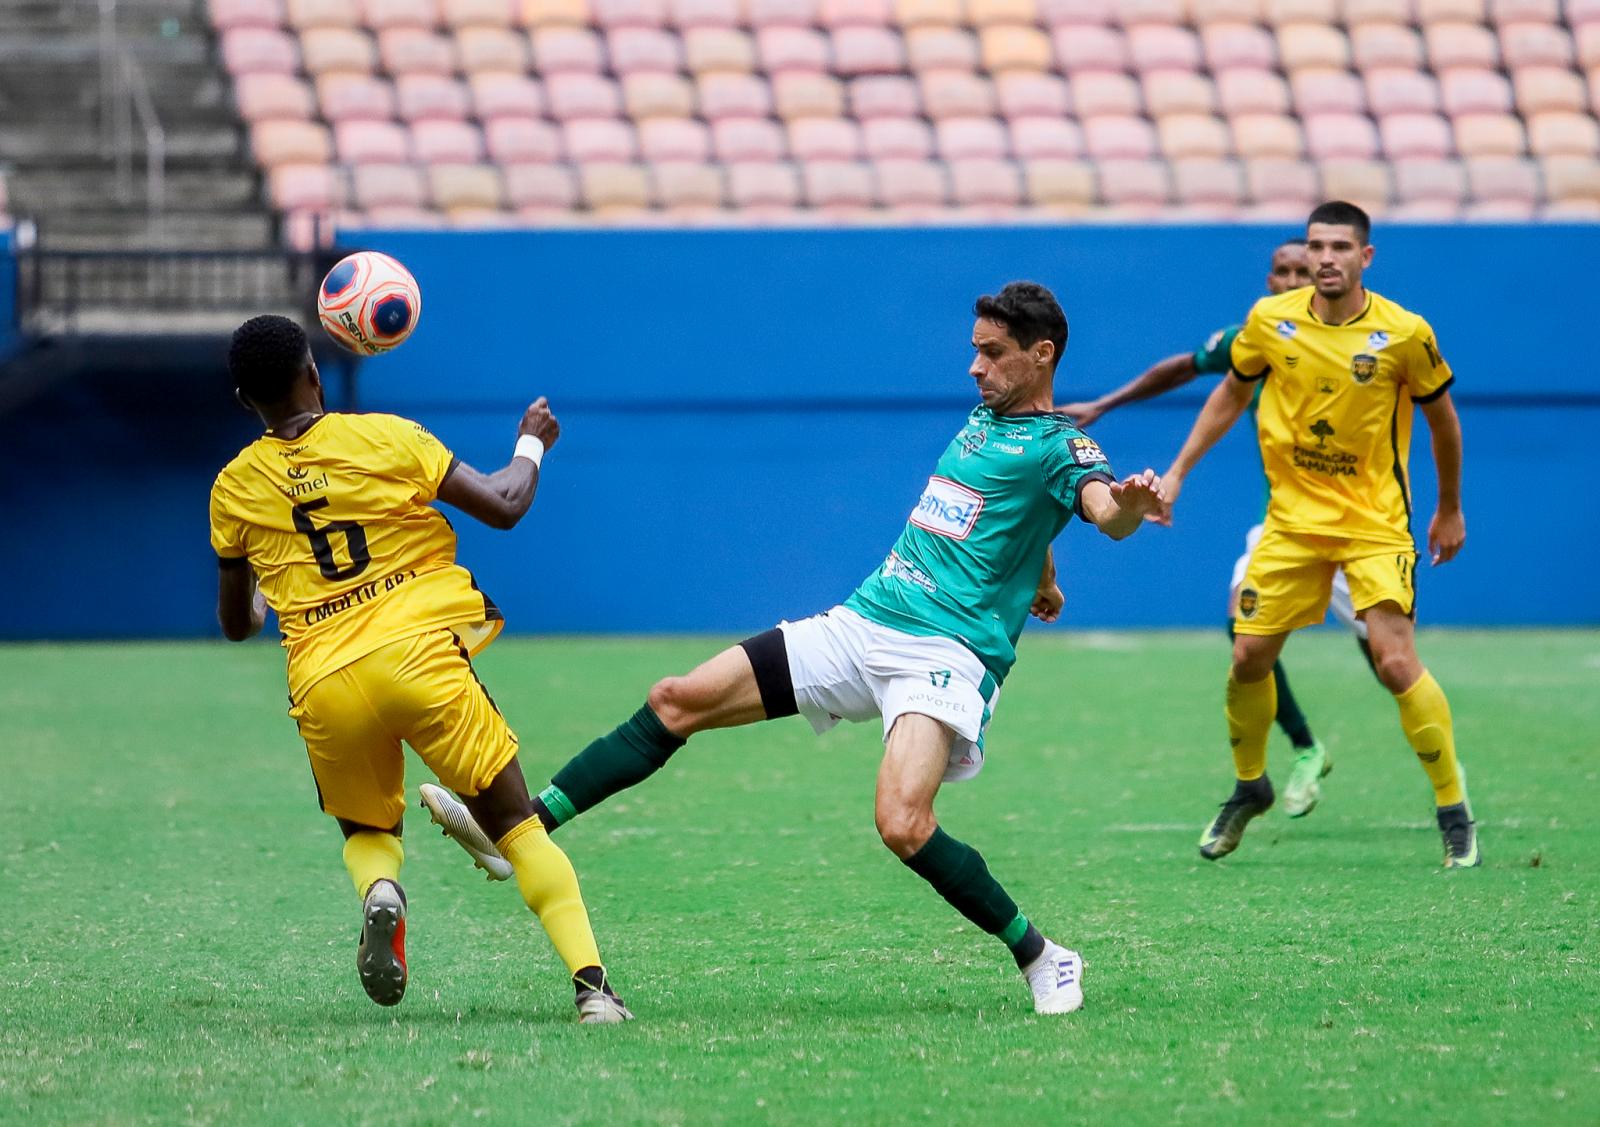 Serviço de jogo | Manaus vs Amazonas | terceira rodada Barezão 2022